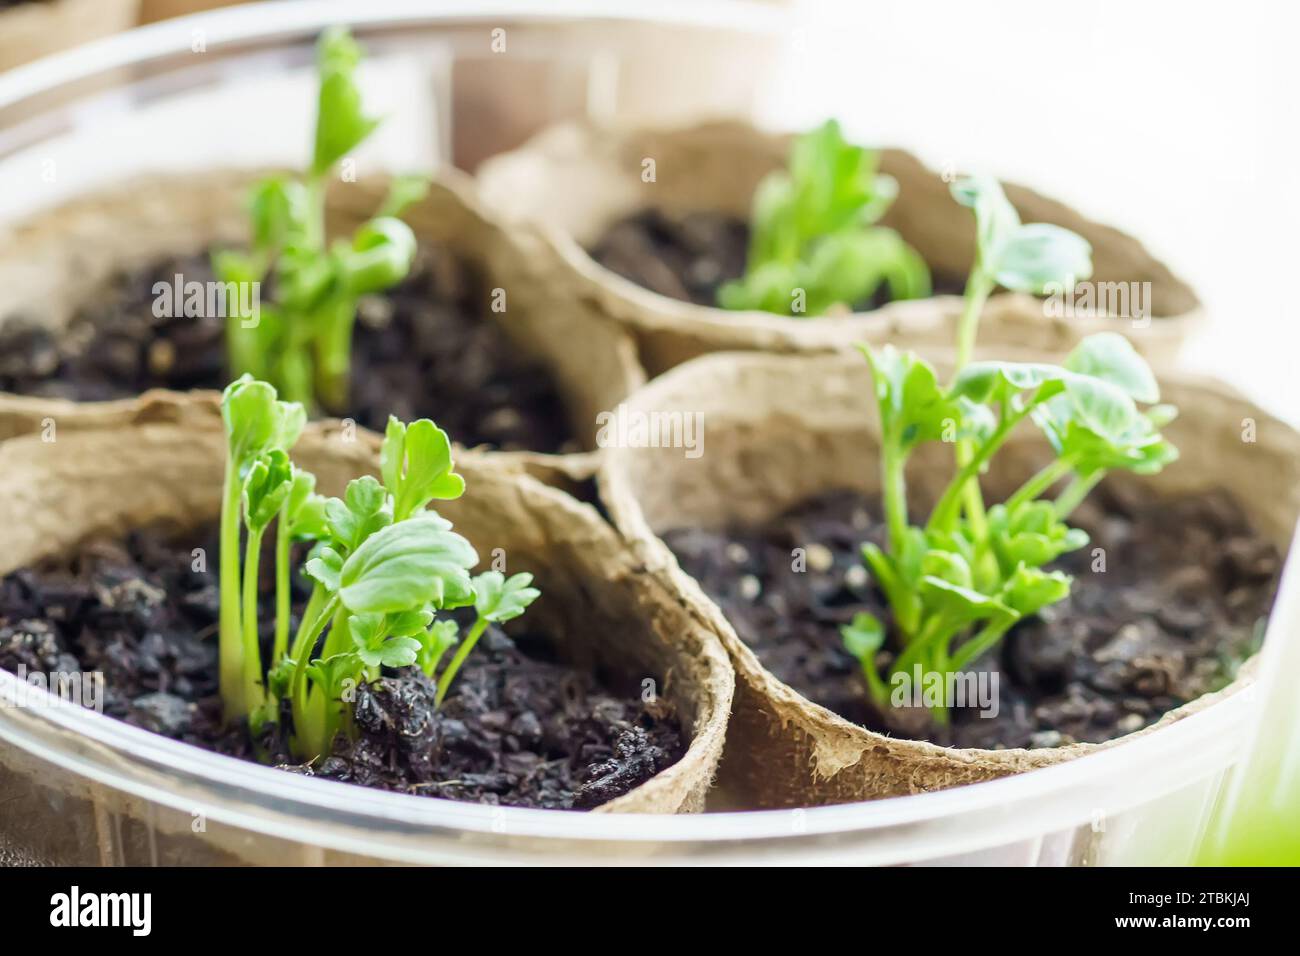 Giovani piantine di Ranunculus asiaticus, forma coltivata, farfalle, mosti d'argilla e foots d'acqua in vasi di torba sul davanzale. Foto Stock